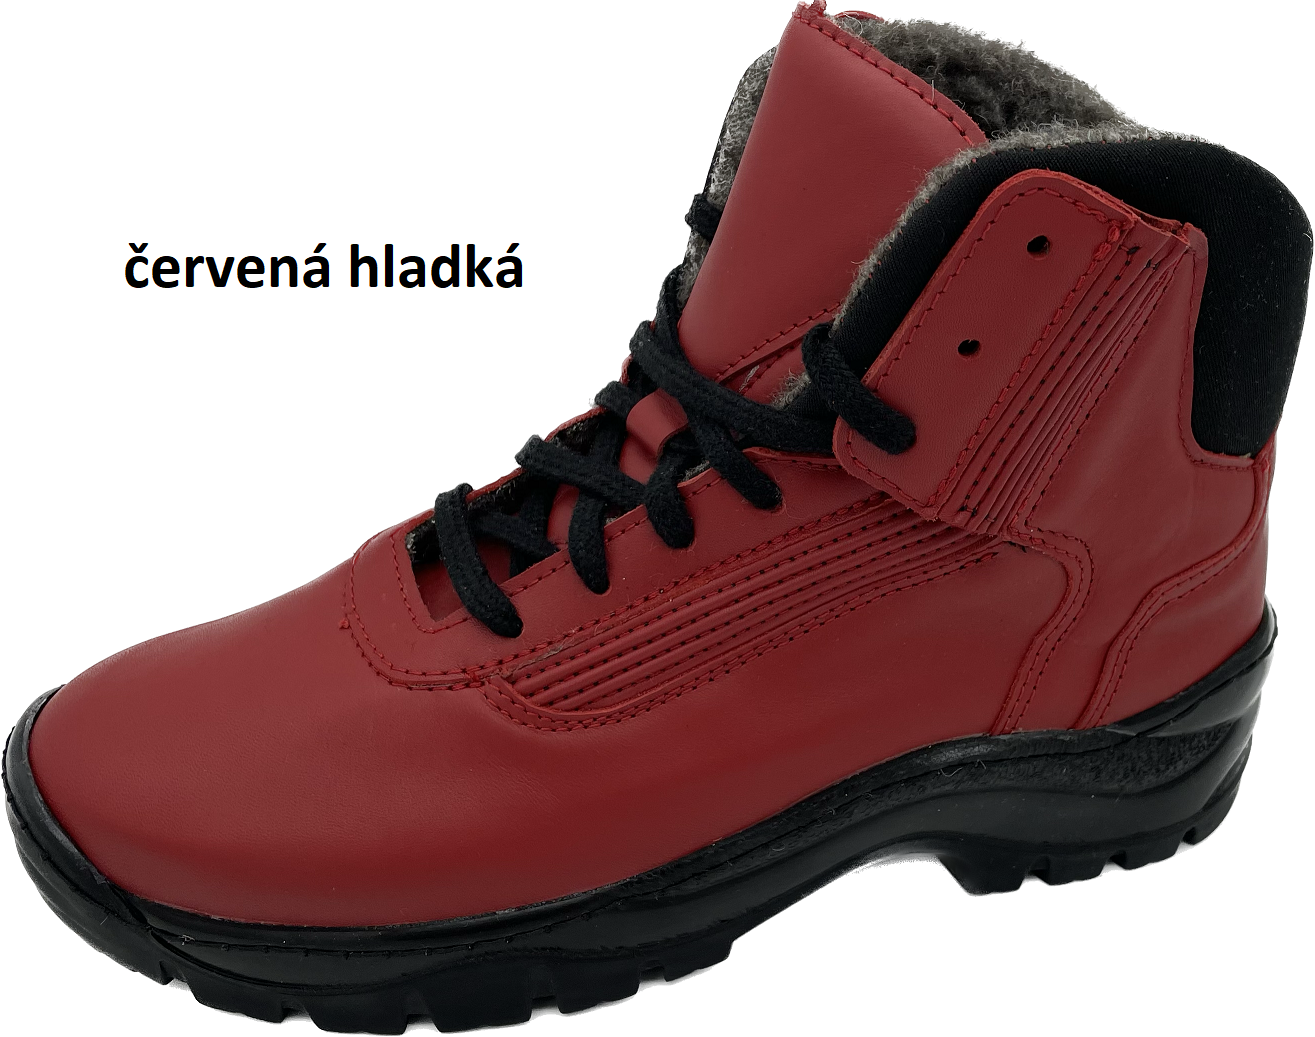 Boty Hanák TREKING Barva usně: červená hladká, Velikosti obuvi: 36